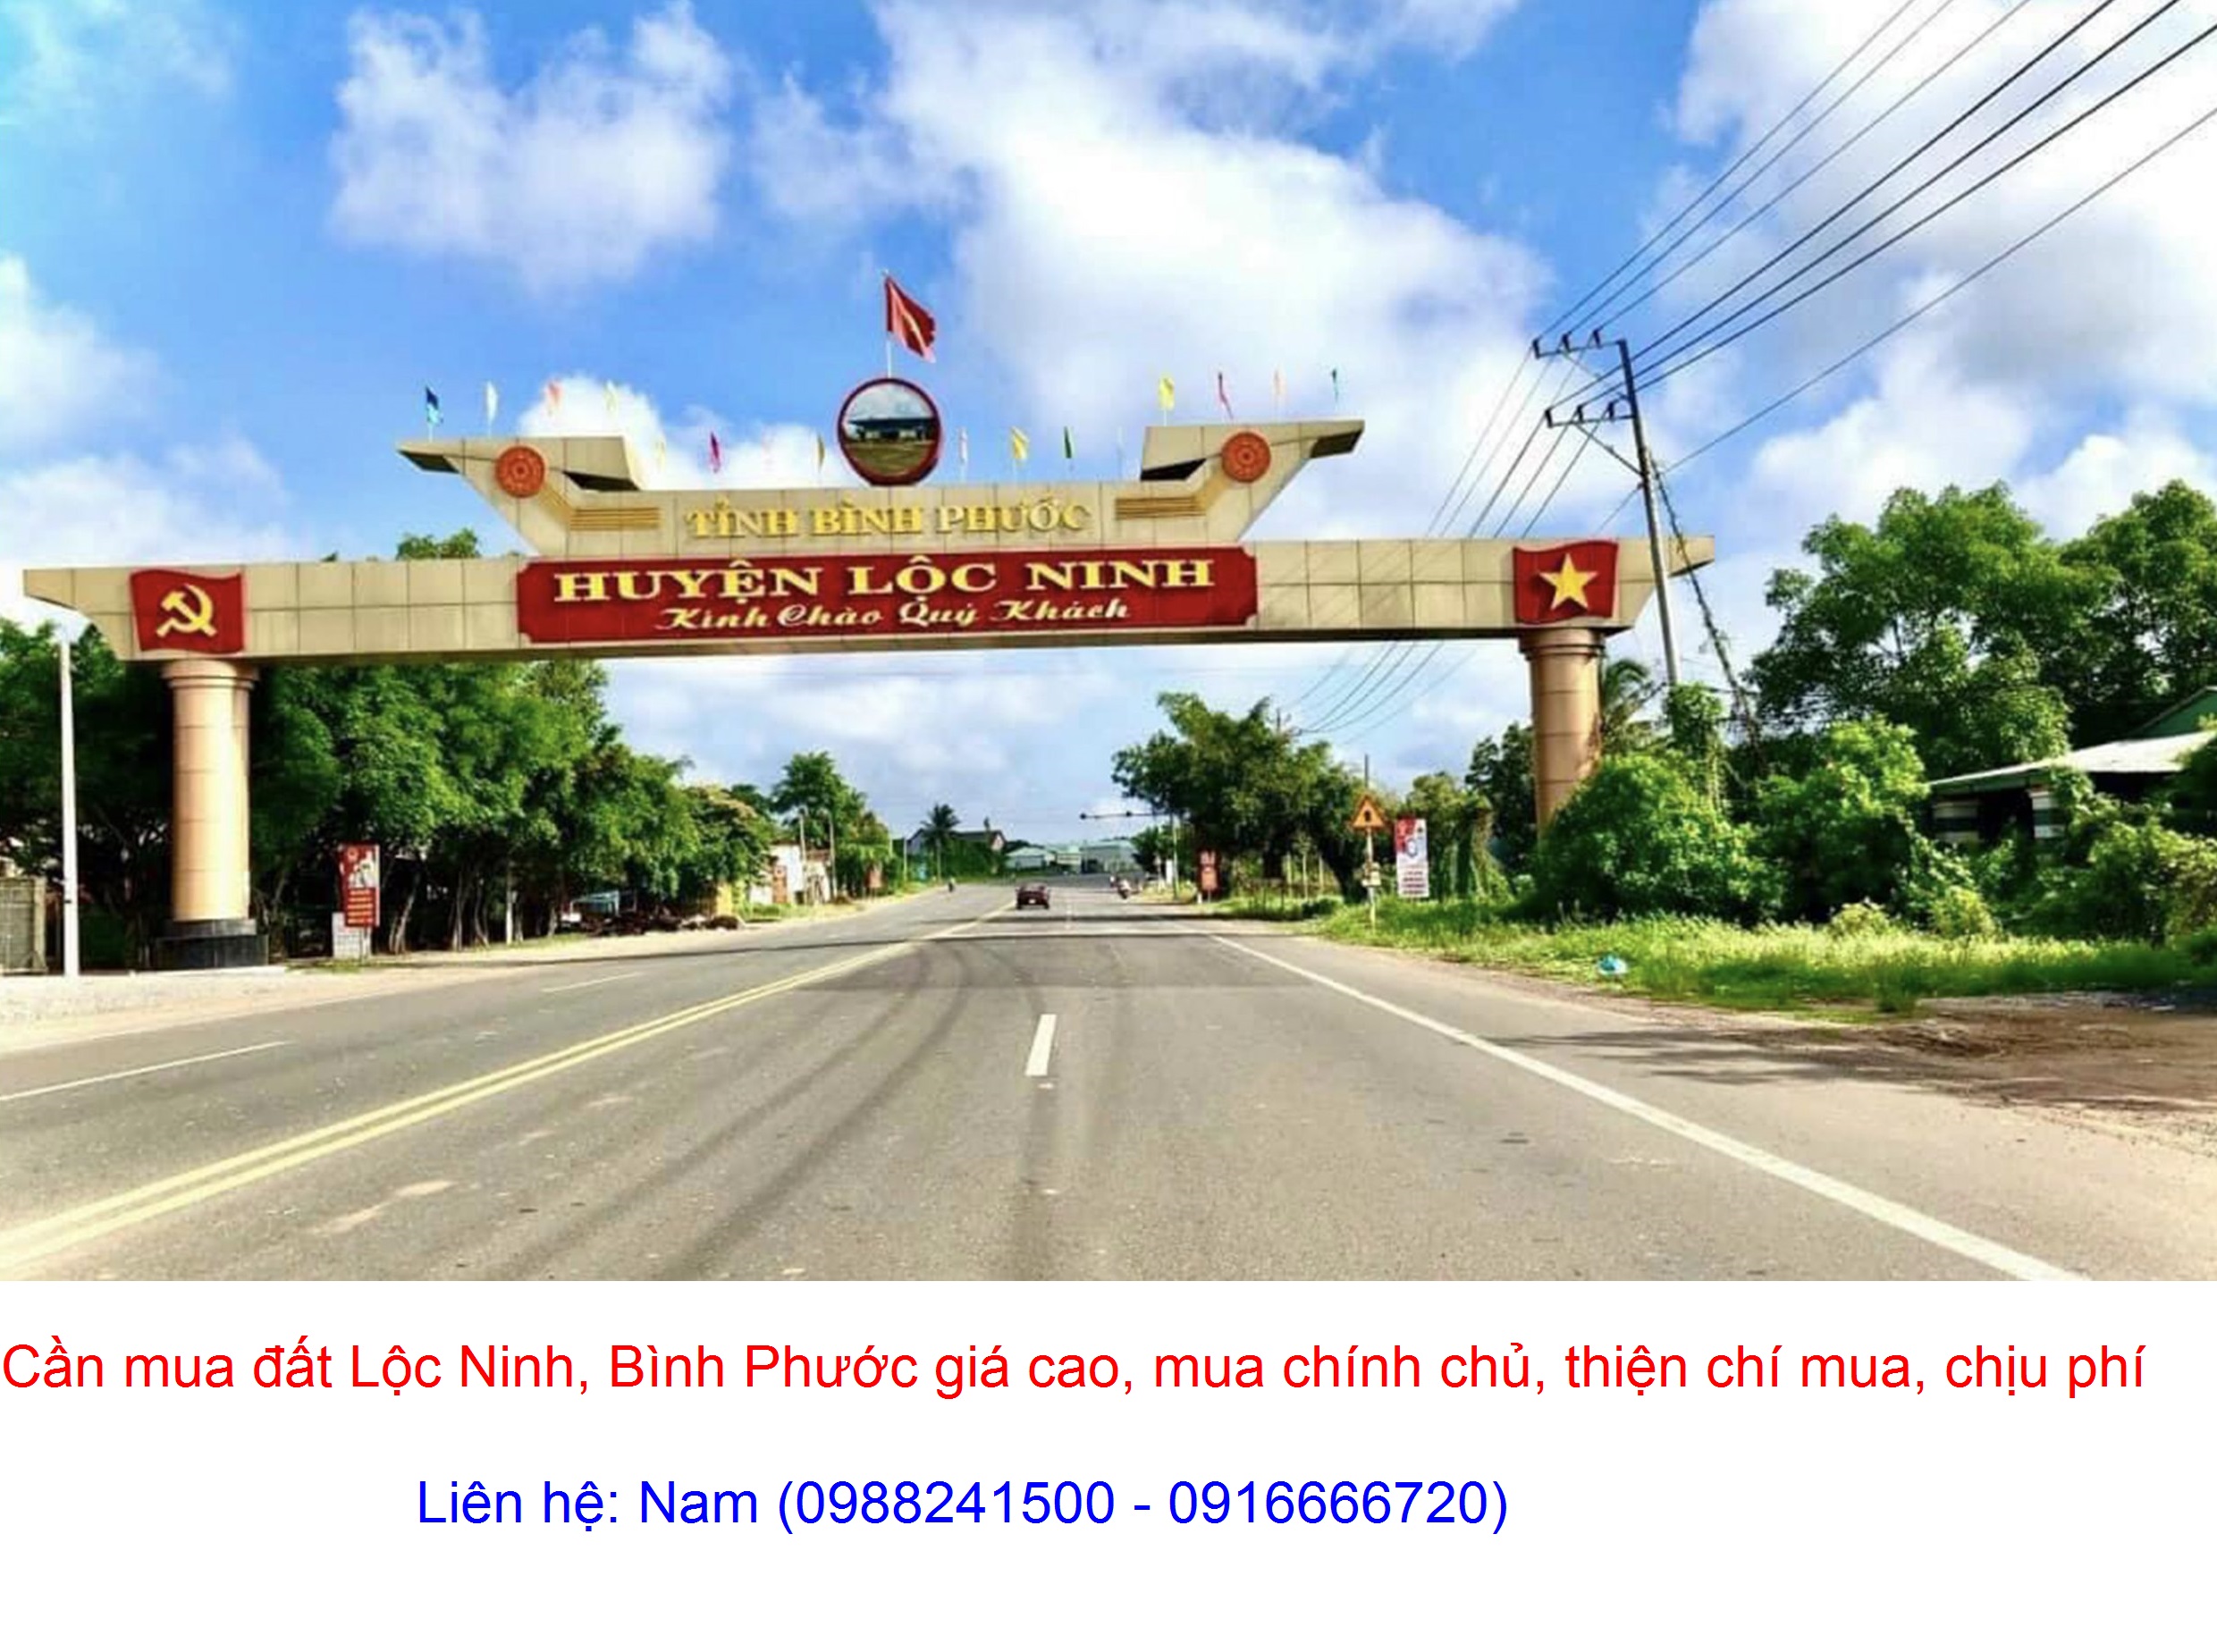 Cần Mua đất xã Lộc Quang, Lộc Ninh giá cao, mua chính chủ